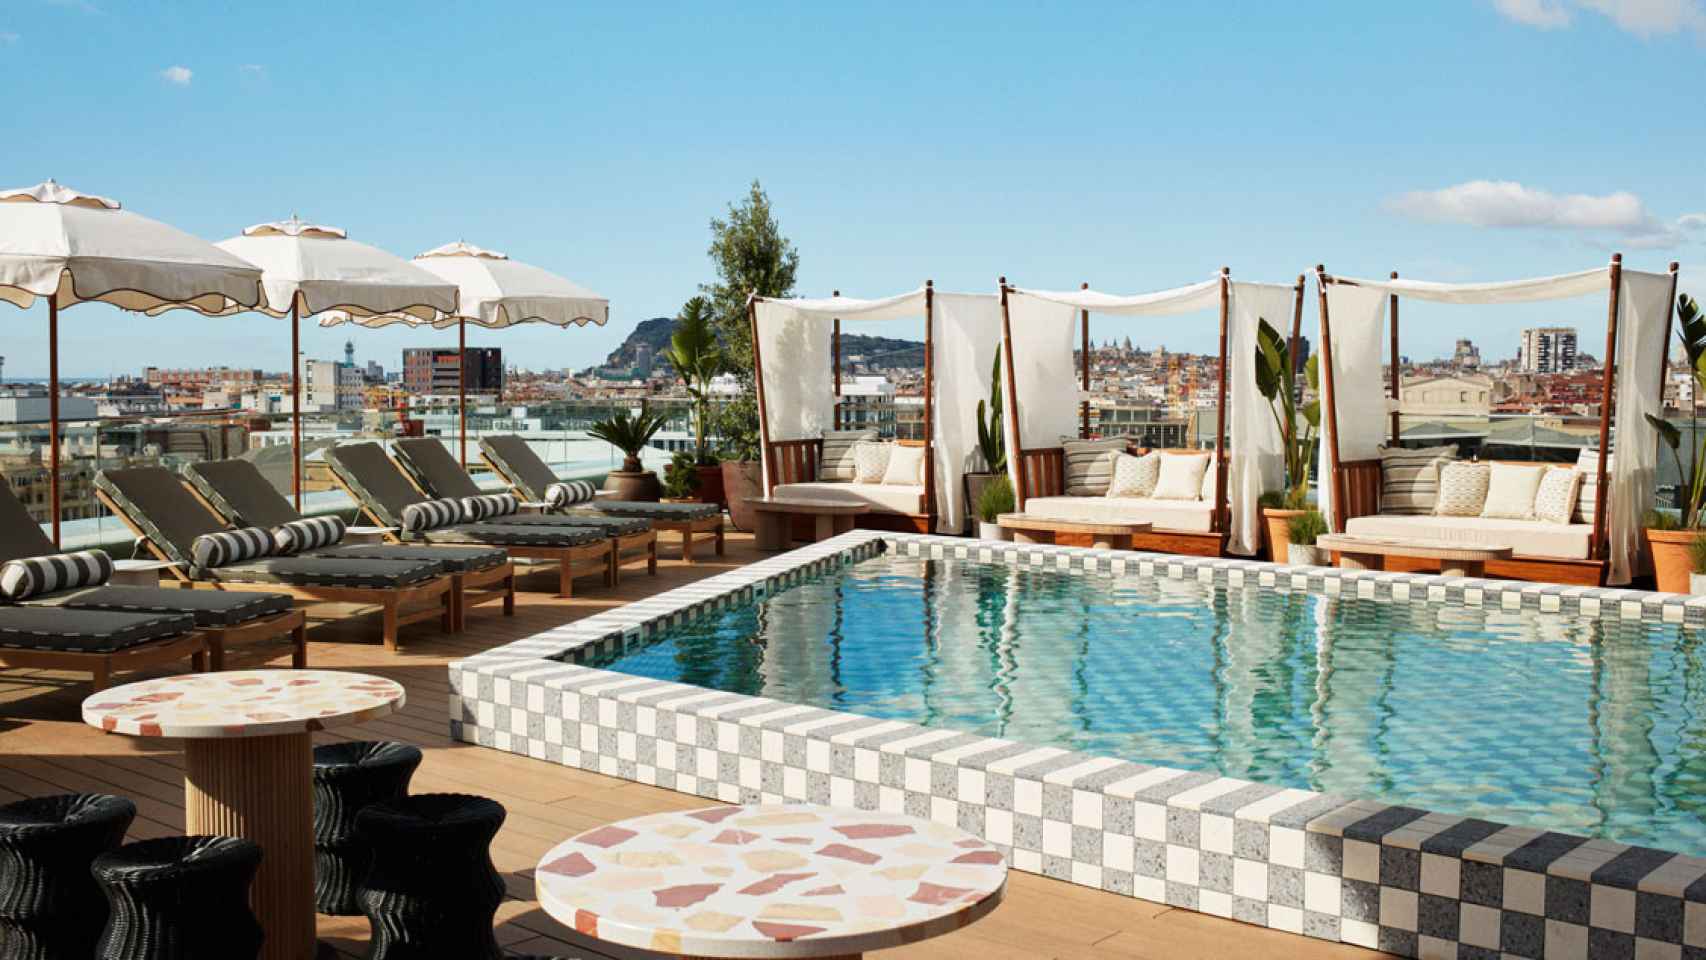 Imagen de la zona de piscina de The Hoxton, el nuevo hotel de Ennimore en Barcelona / Cedida